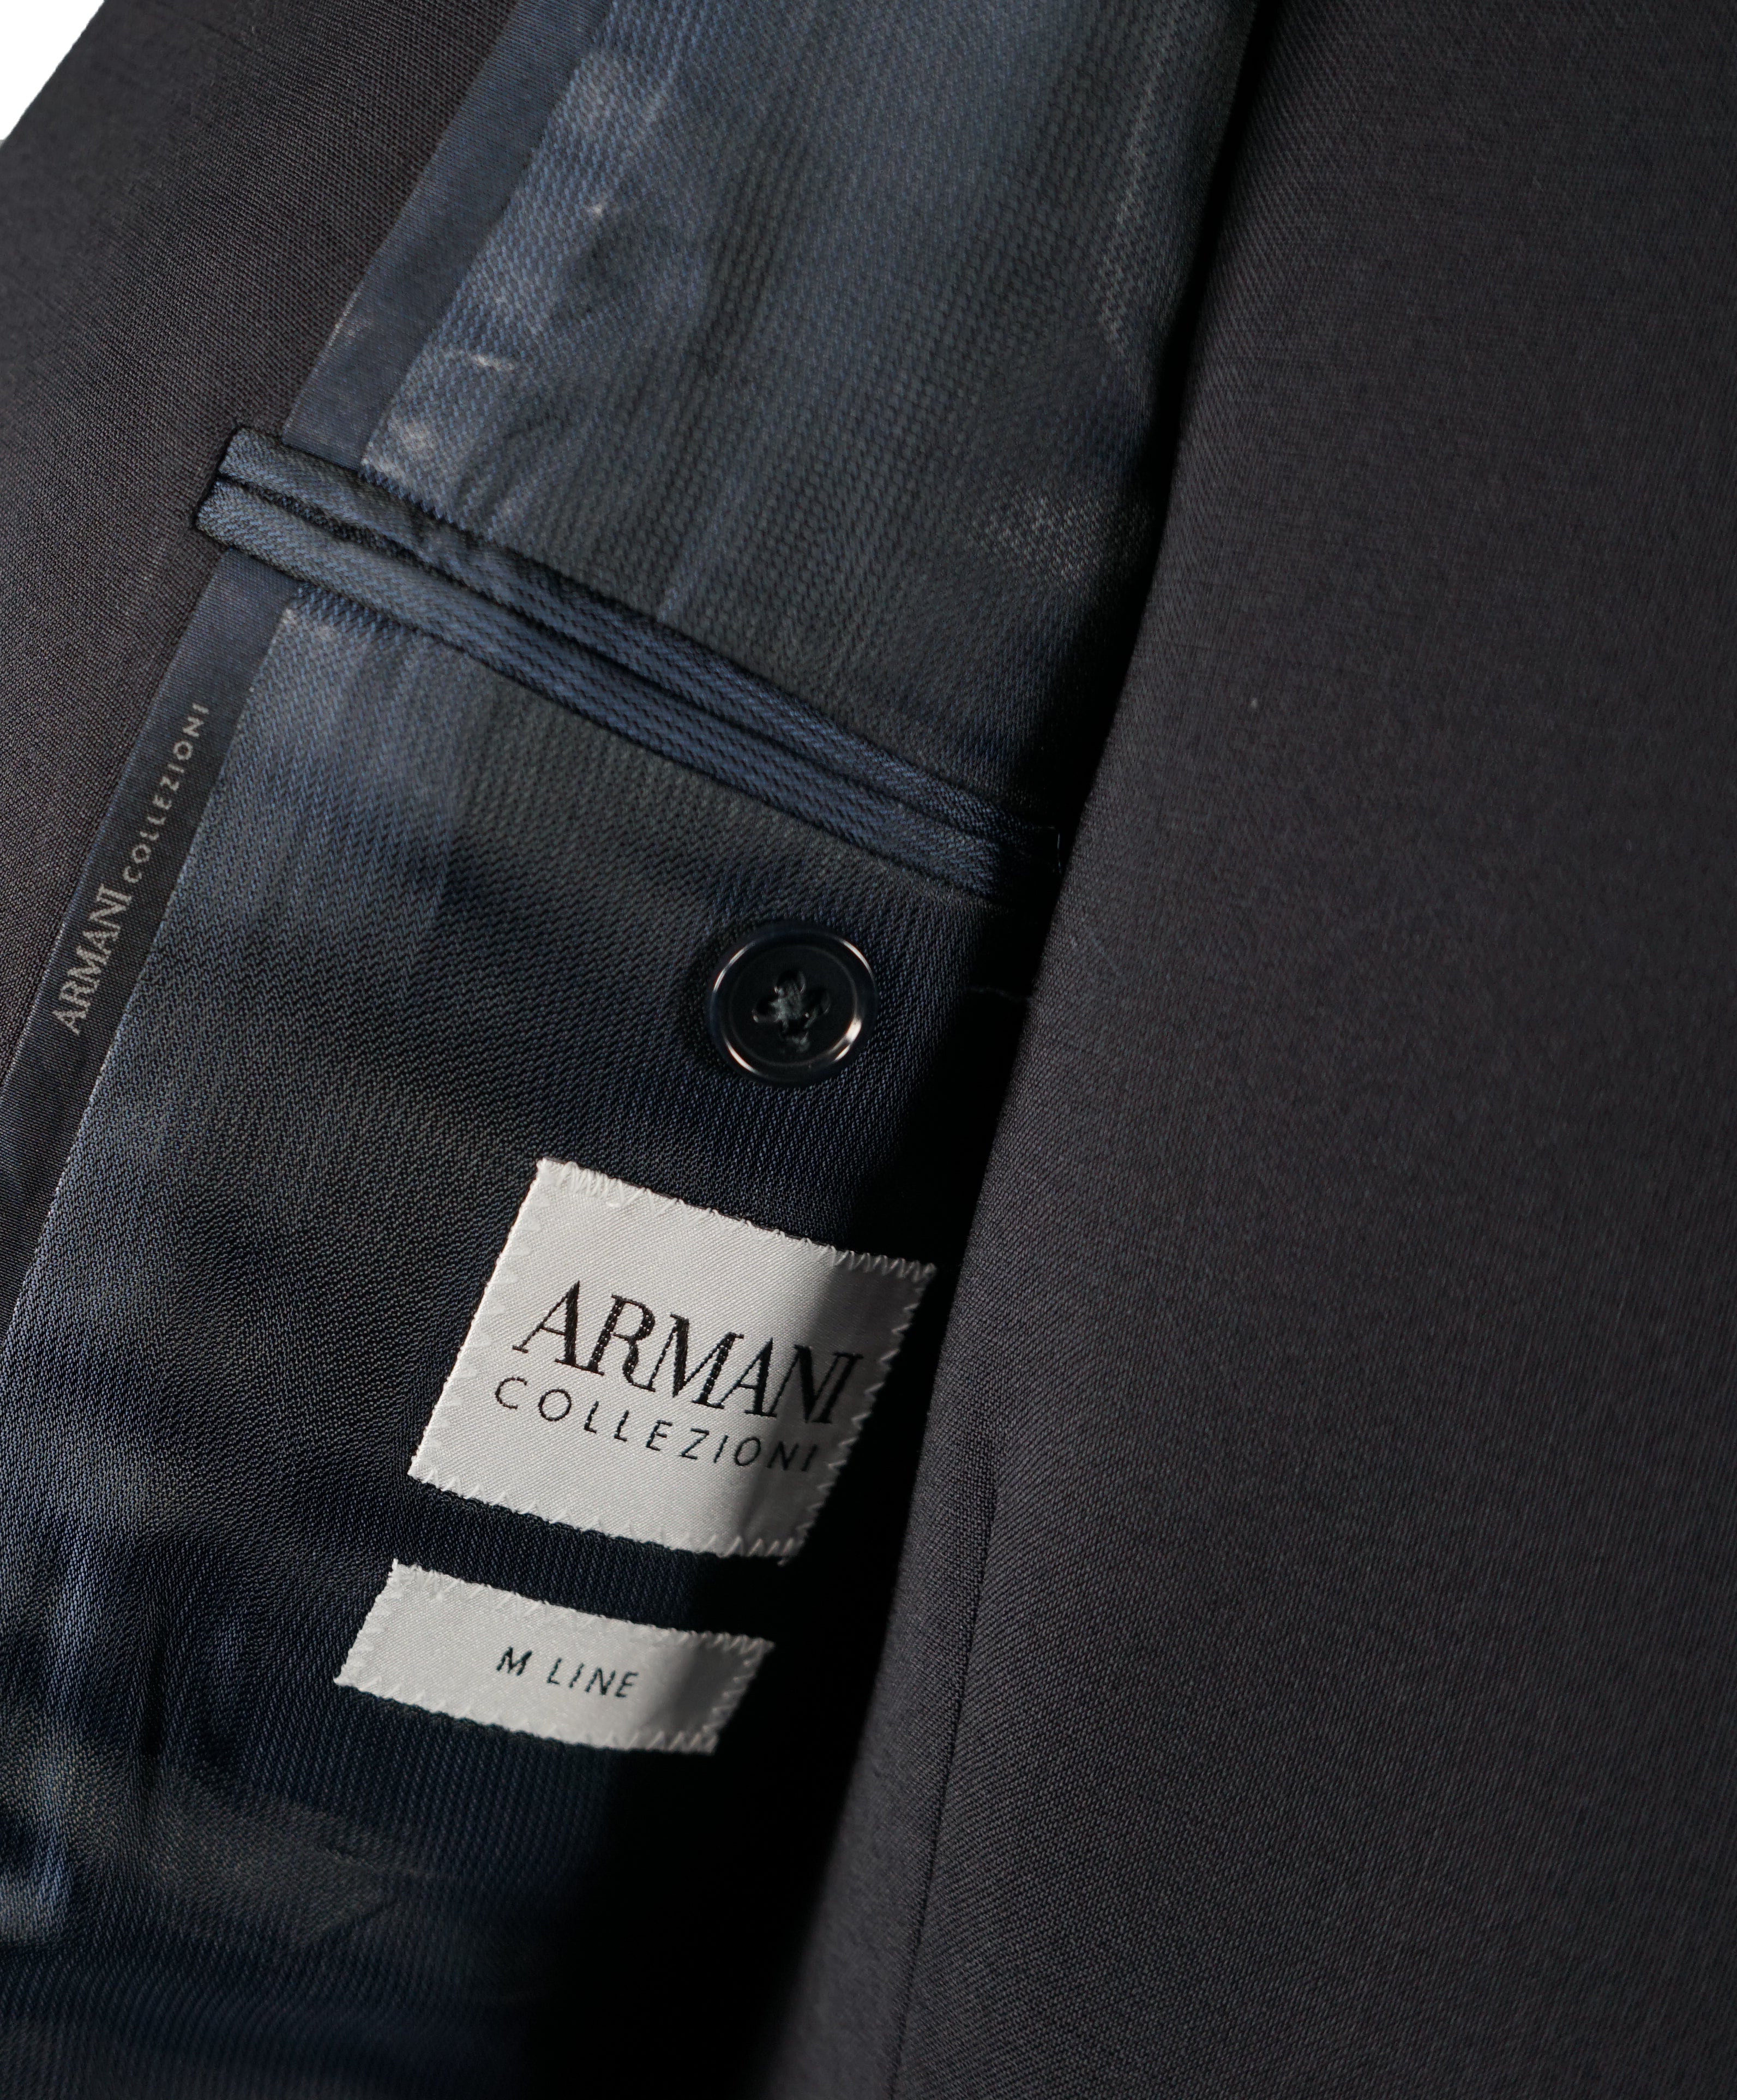 ARMANI COLLEZIONI - “M Line” 3-Piece Navy Solid Suit With Pick Stitchi